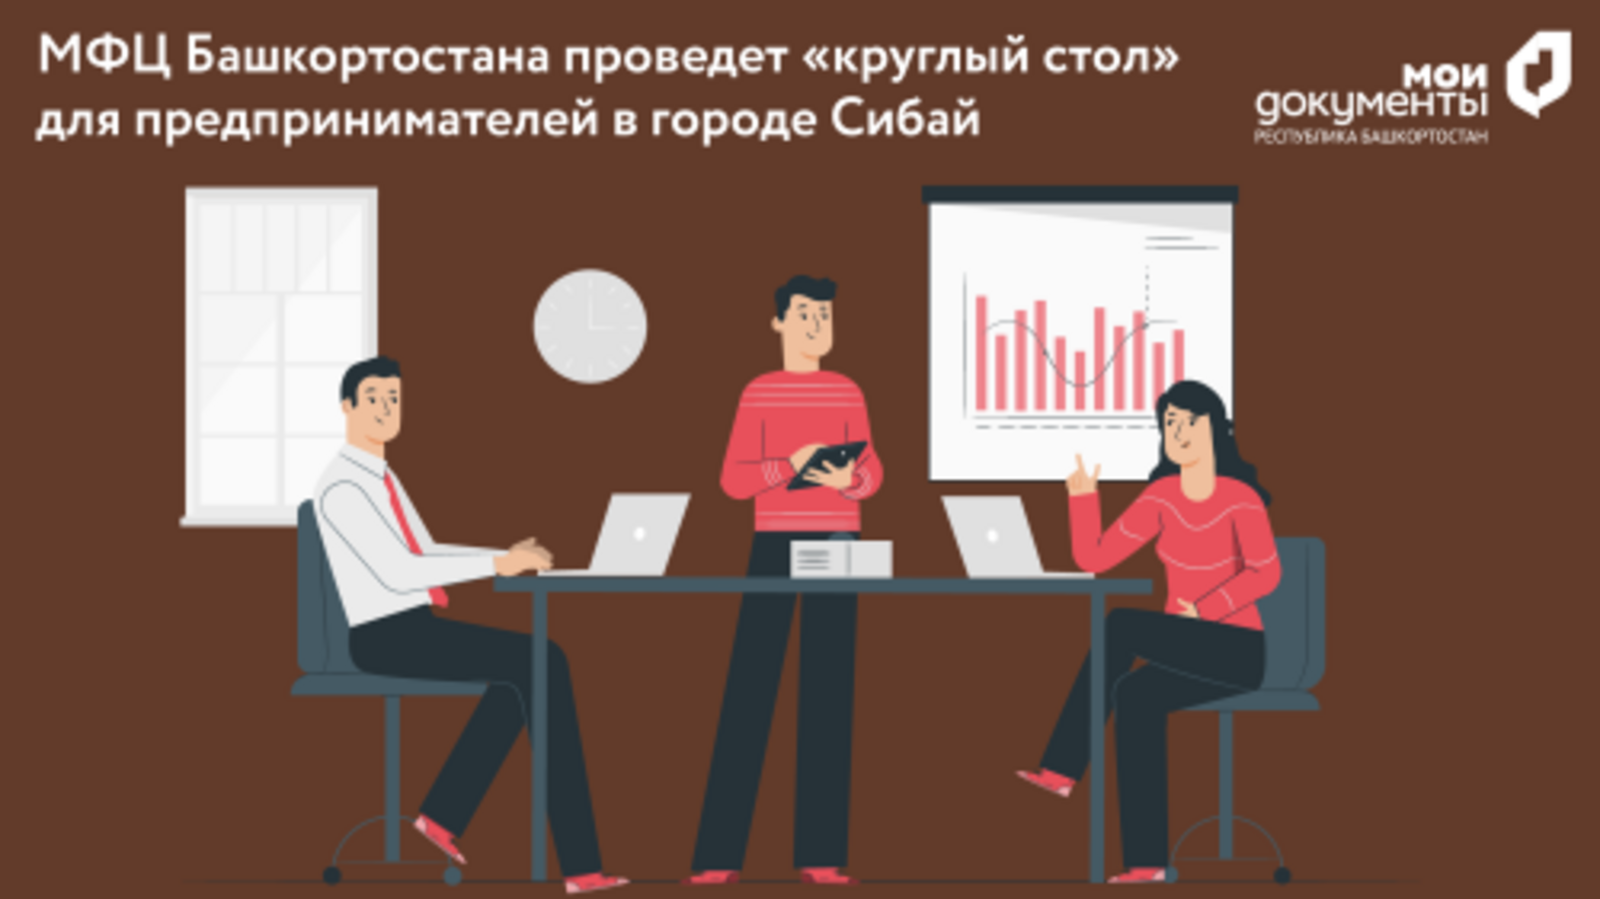 МФЦ Башкортостана проведет «круглый стол» для предпринимателей в городе Сибай